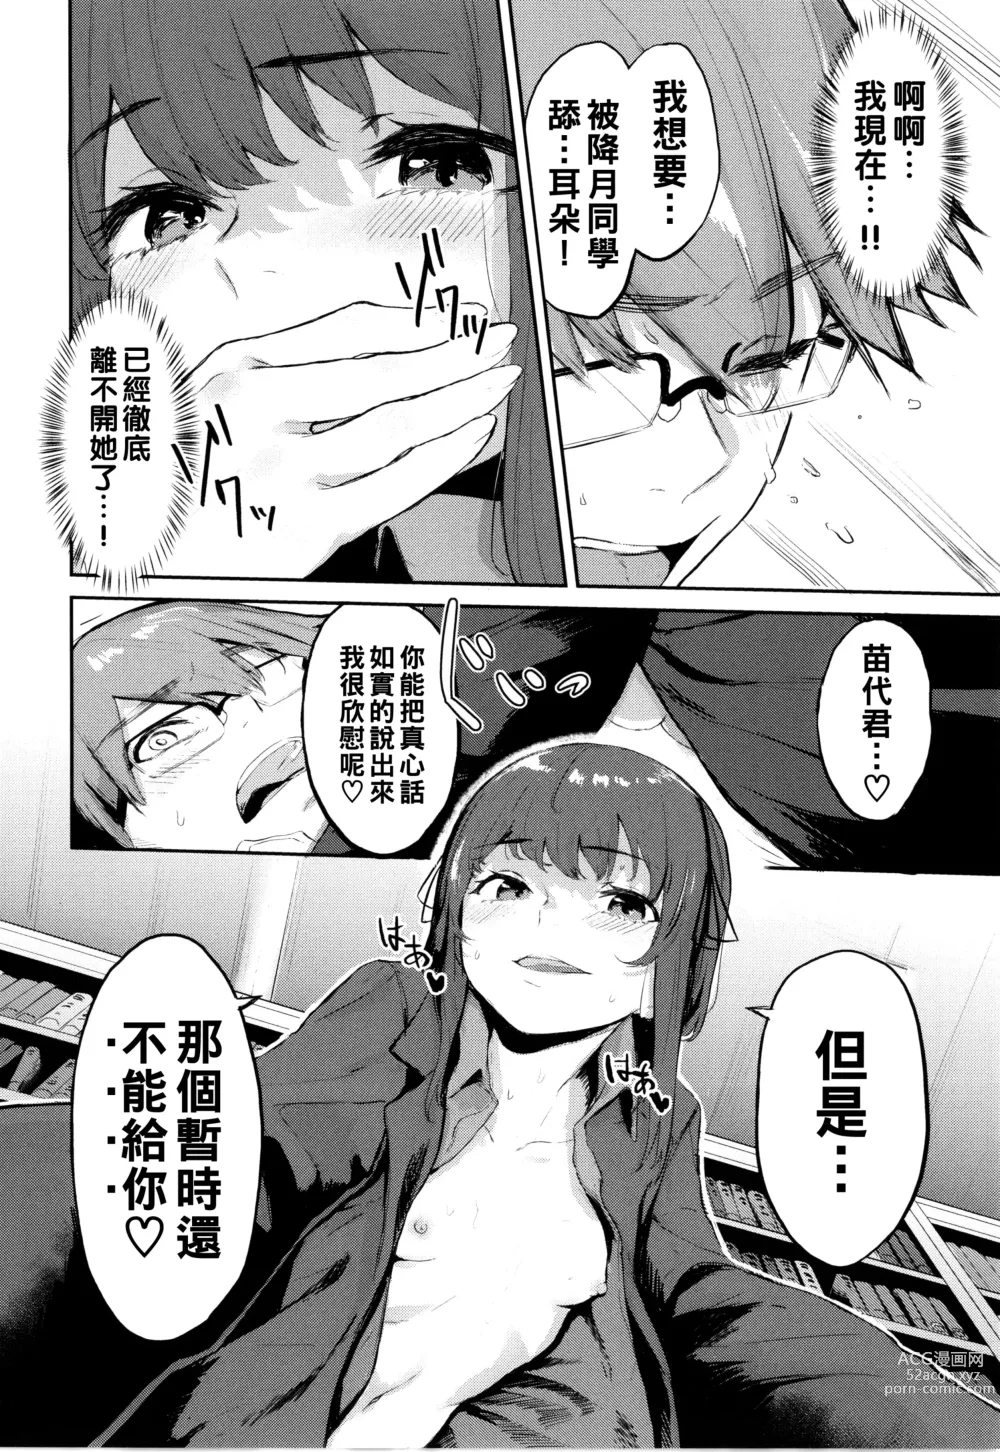 Page 14 of manga Toshoshitsu no Himitsu - Library Secrets